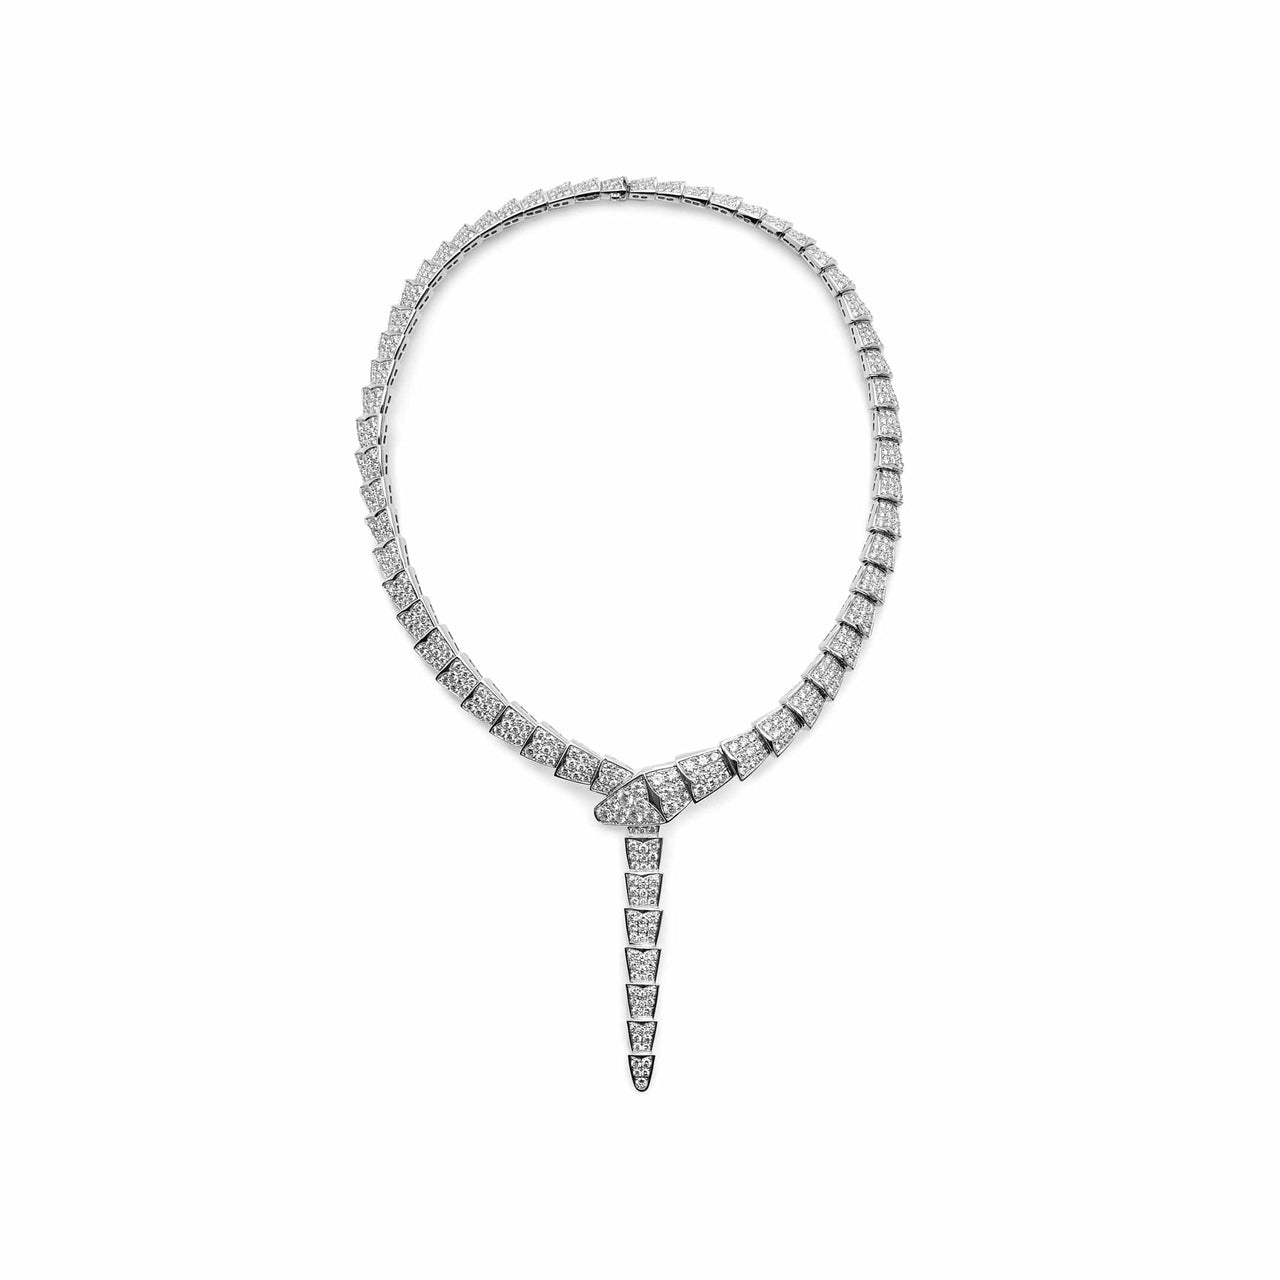 Necklace Bvlgari Serpenti Viper White Gold Diamond Necklace 348165 Wrist Aficionado